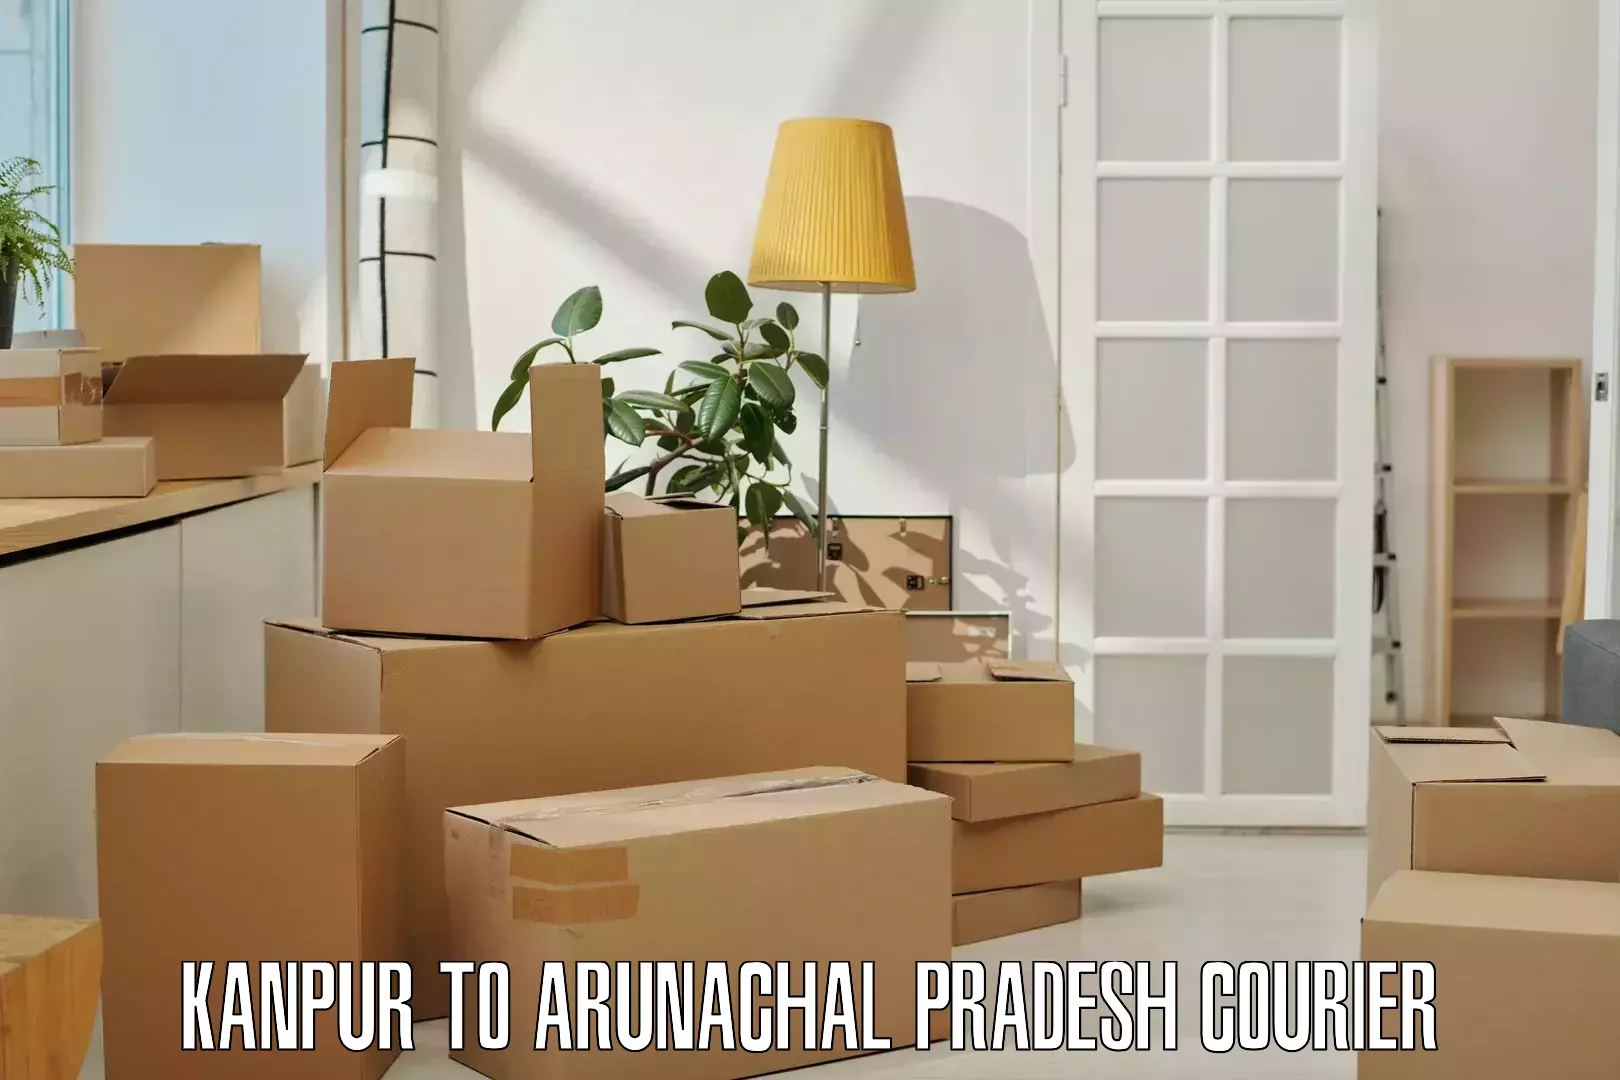 International courier networks Kanpur to Arunachal Pradesh